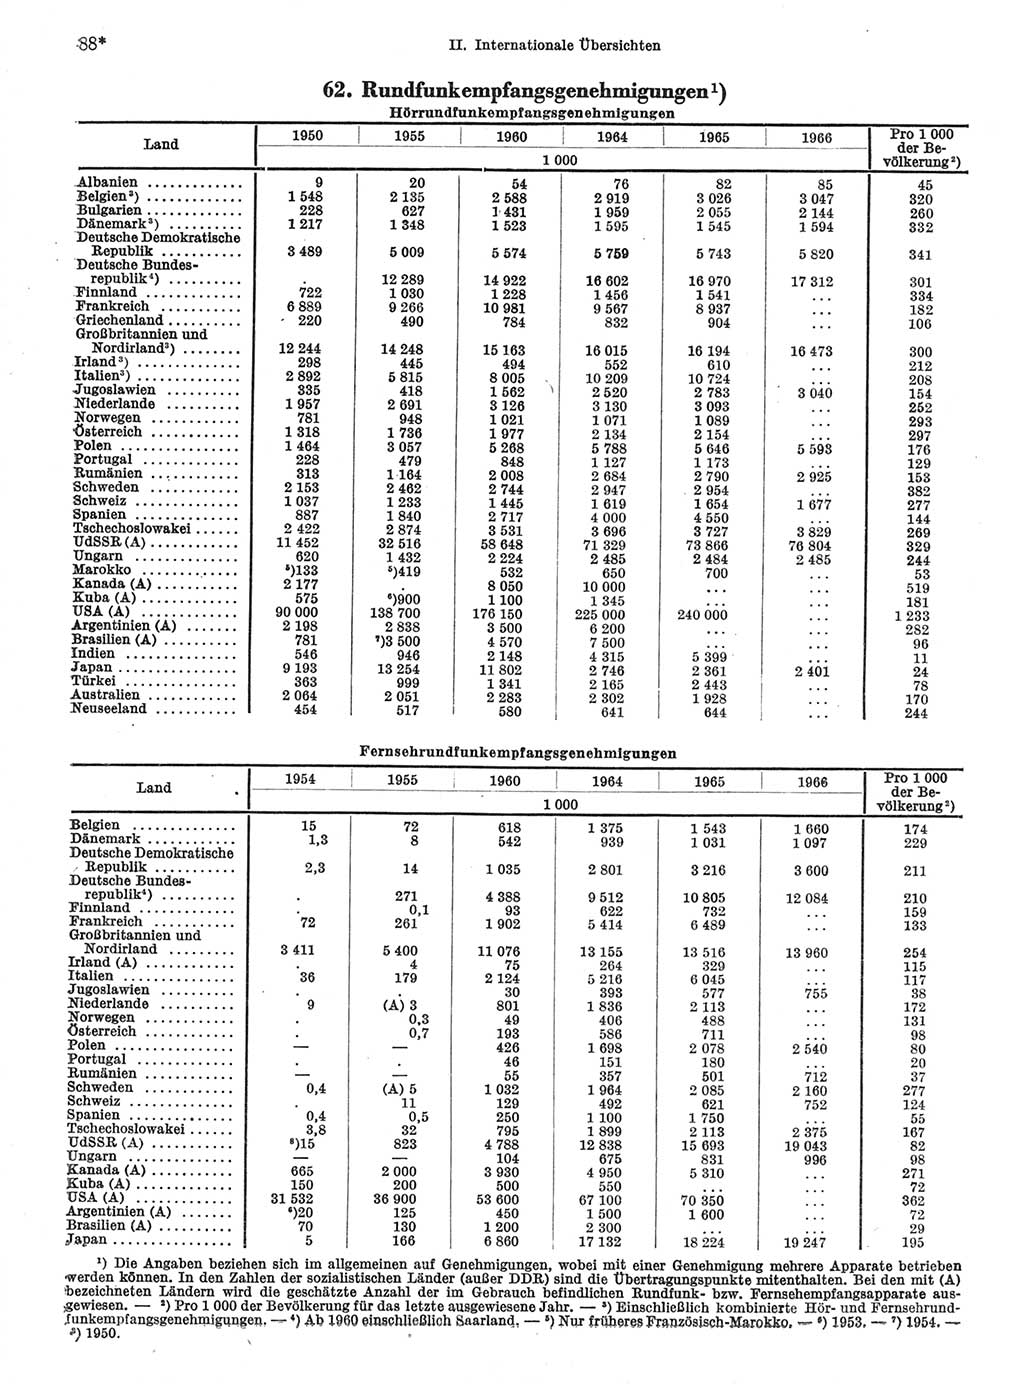 Statistisches Jahrbuch der Deutschen Demokratischen Republik (DDR) 1968, Seite 88 (Stat. Jb. DDR 1968, S. 88)